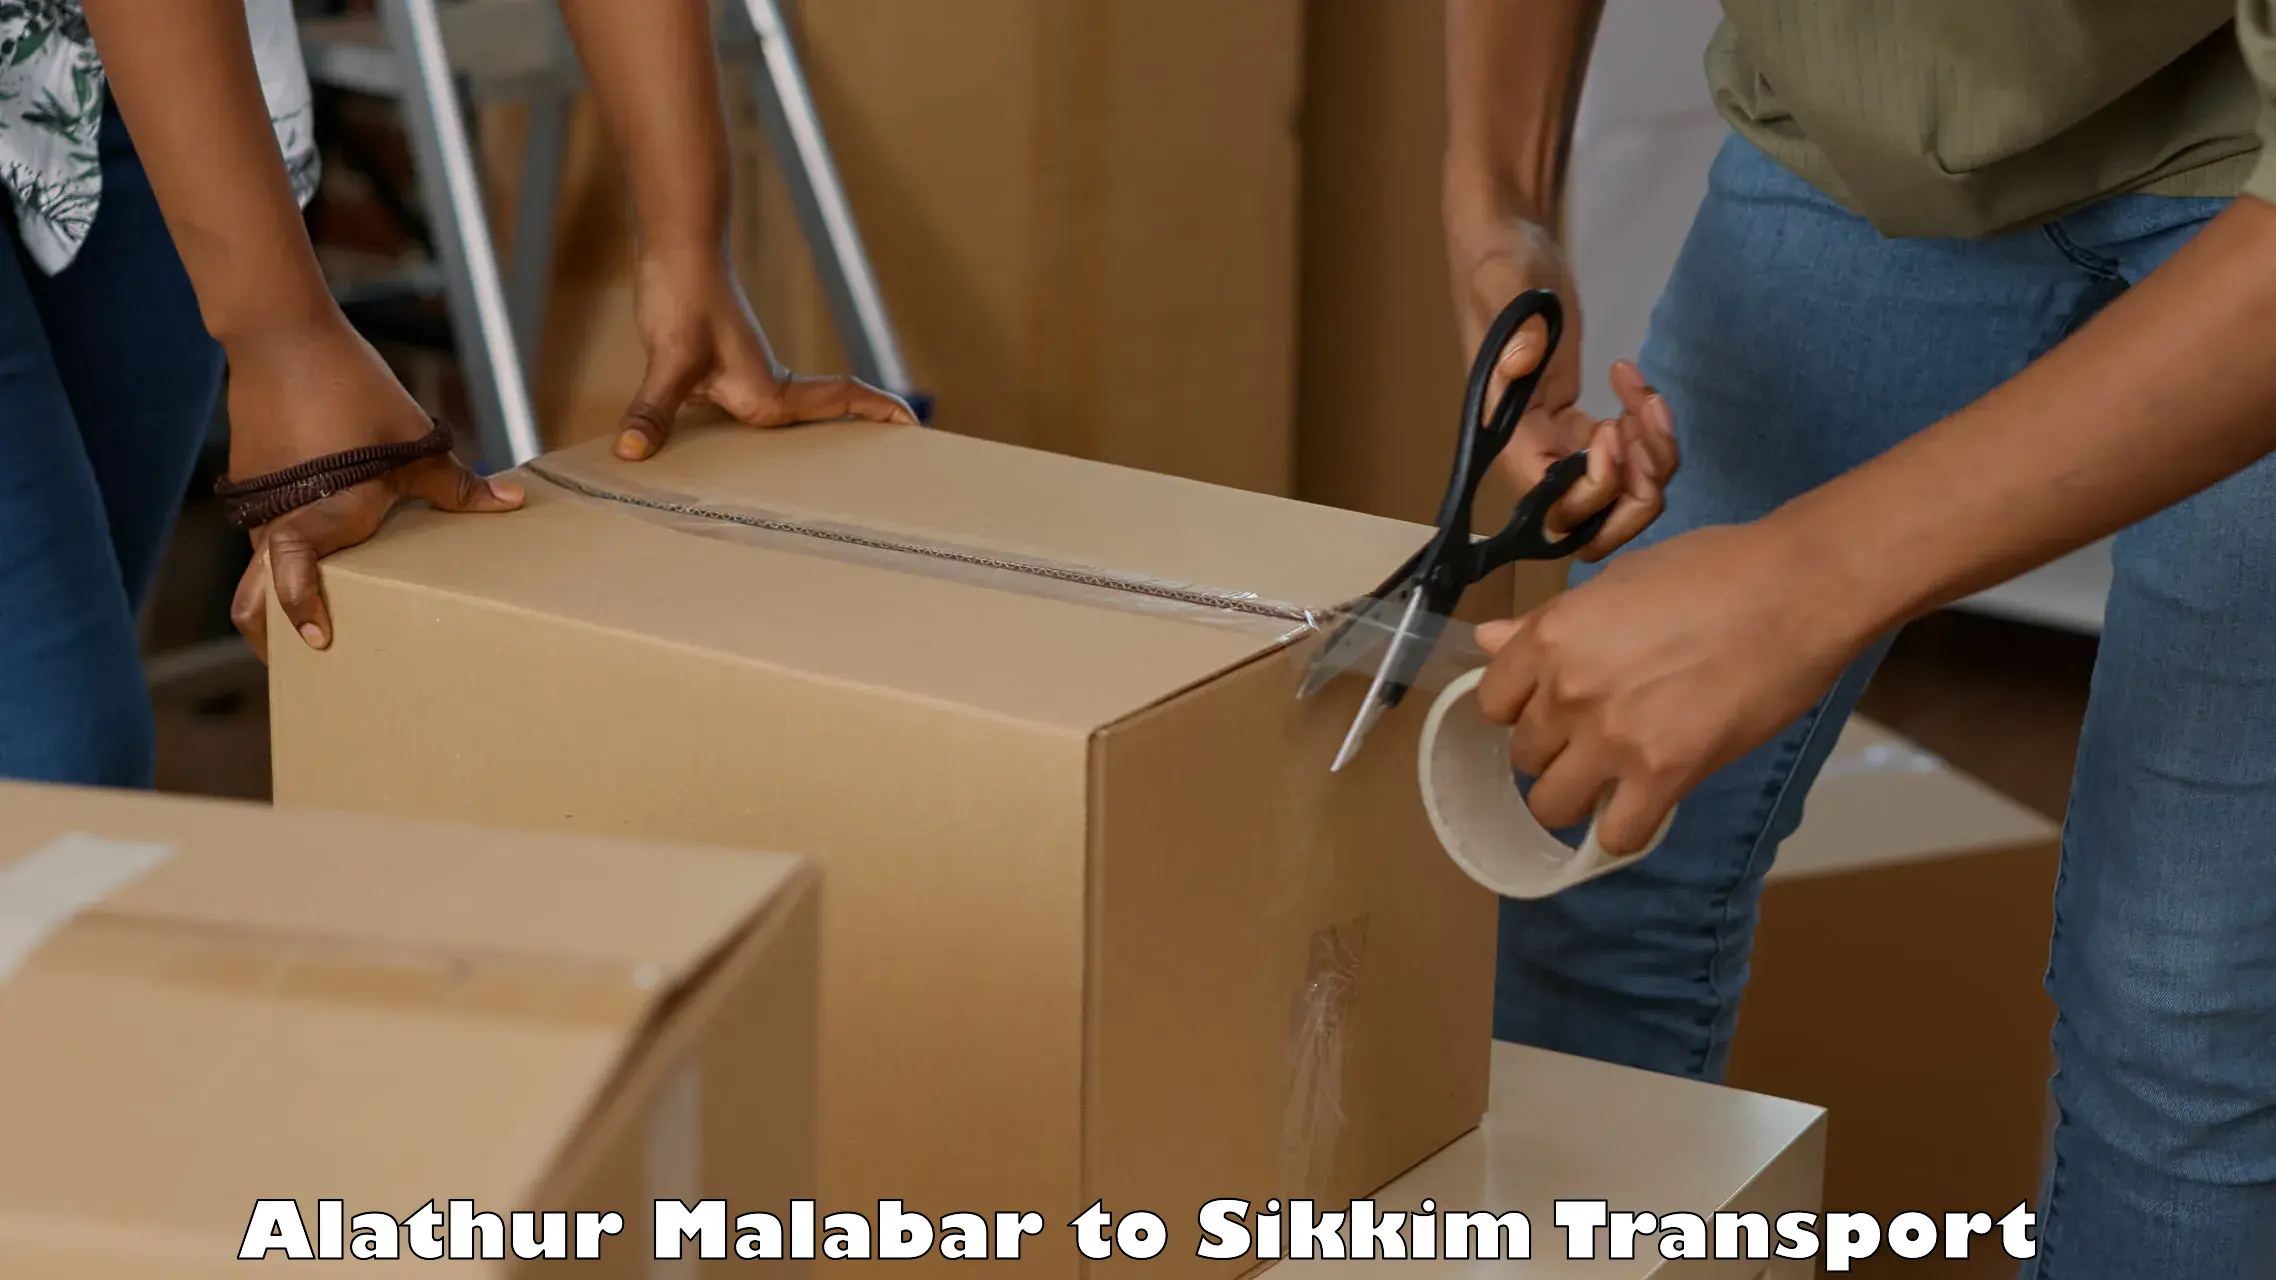 India truck logistics services Alathur Malabar to Mangan